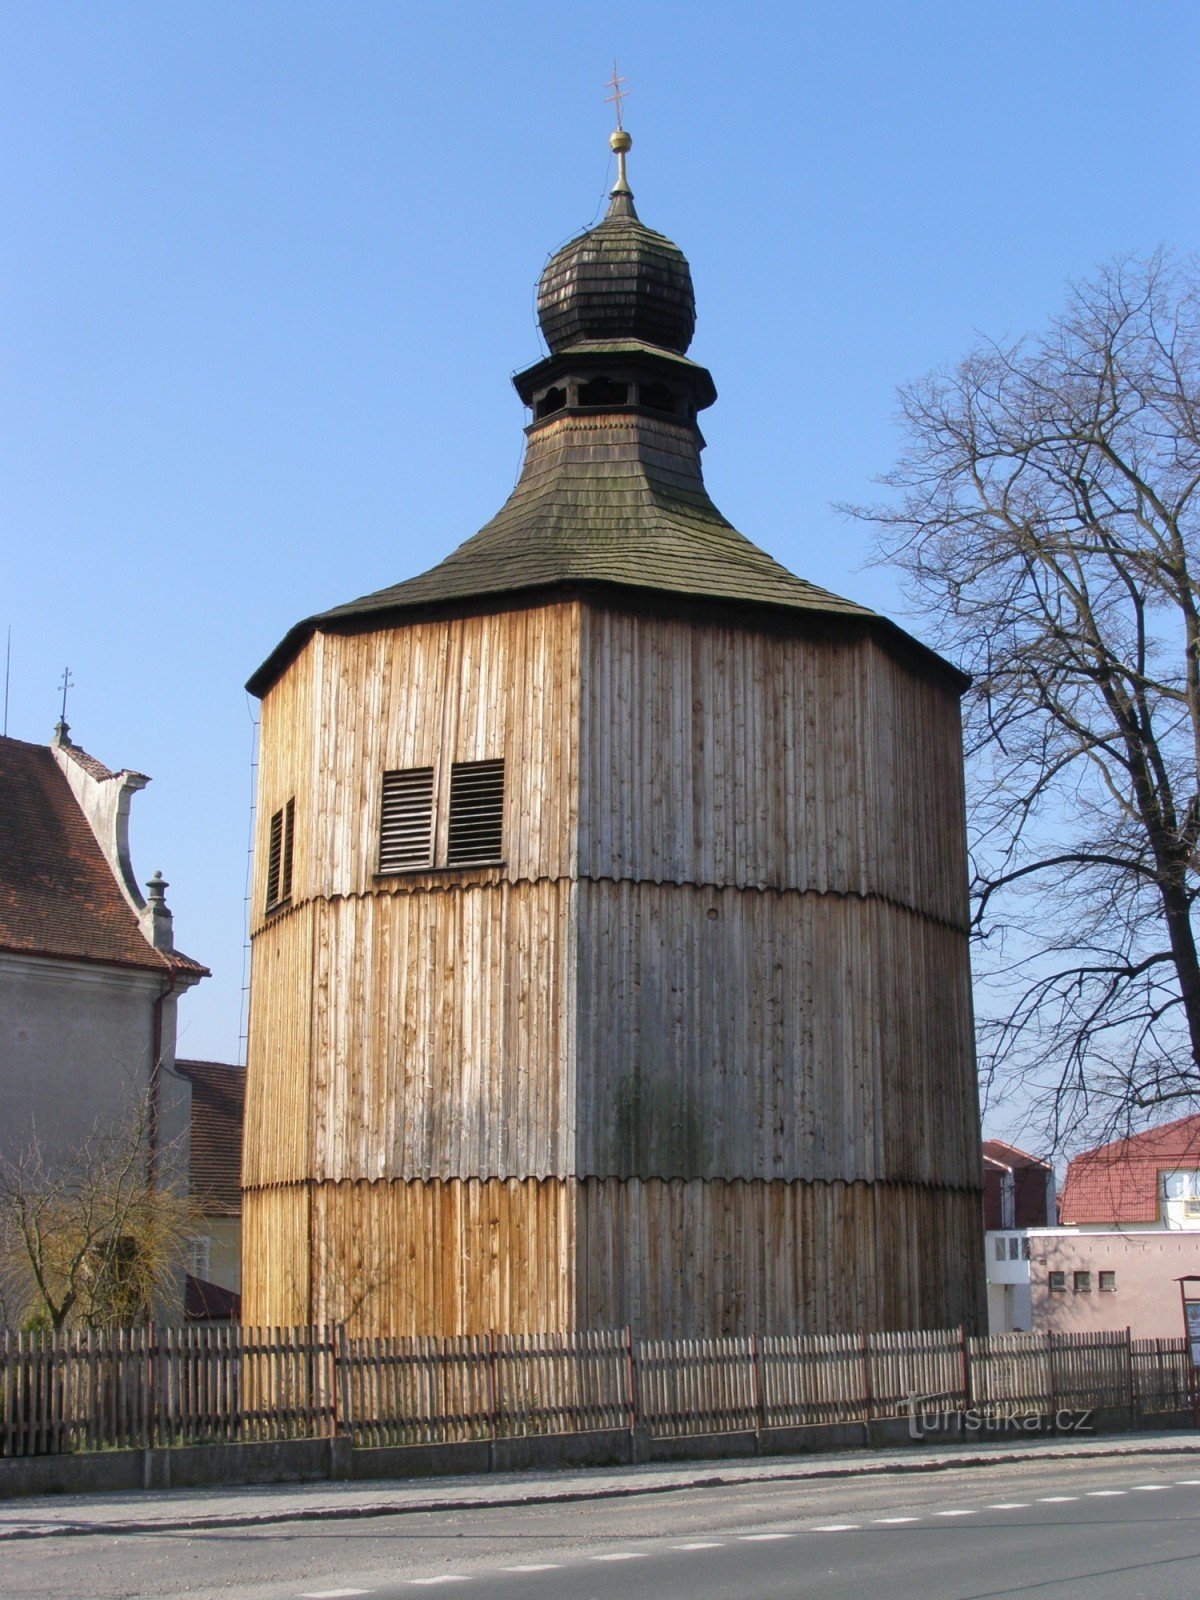 セゼミツェ - 木製の鐘楼